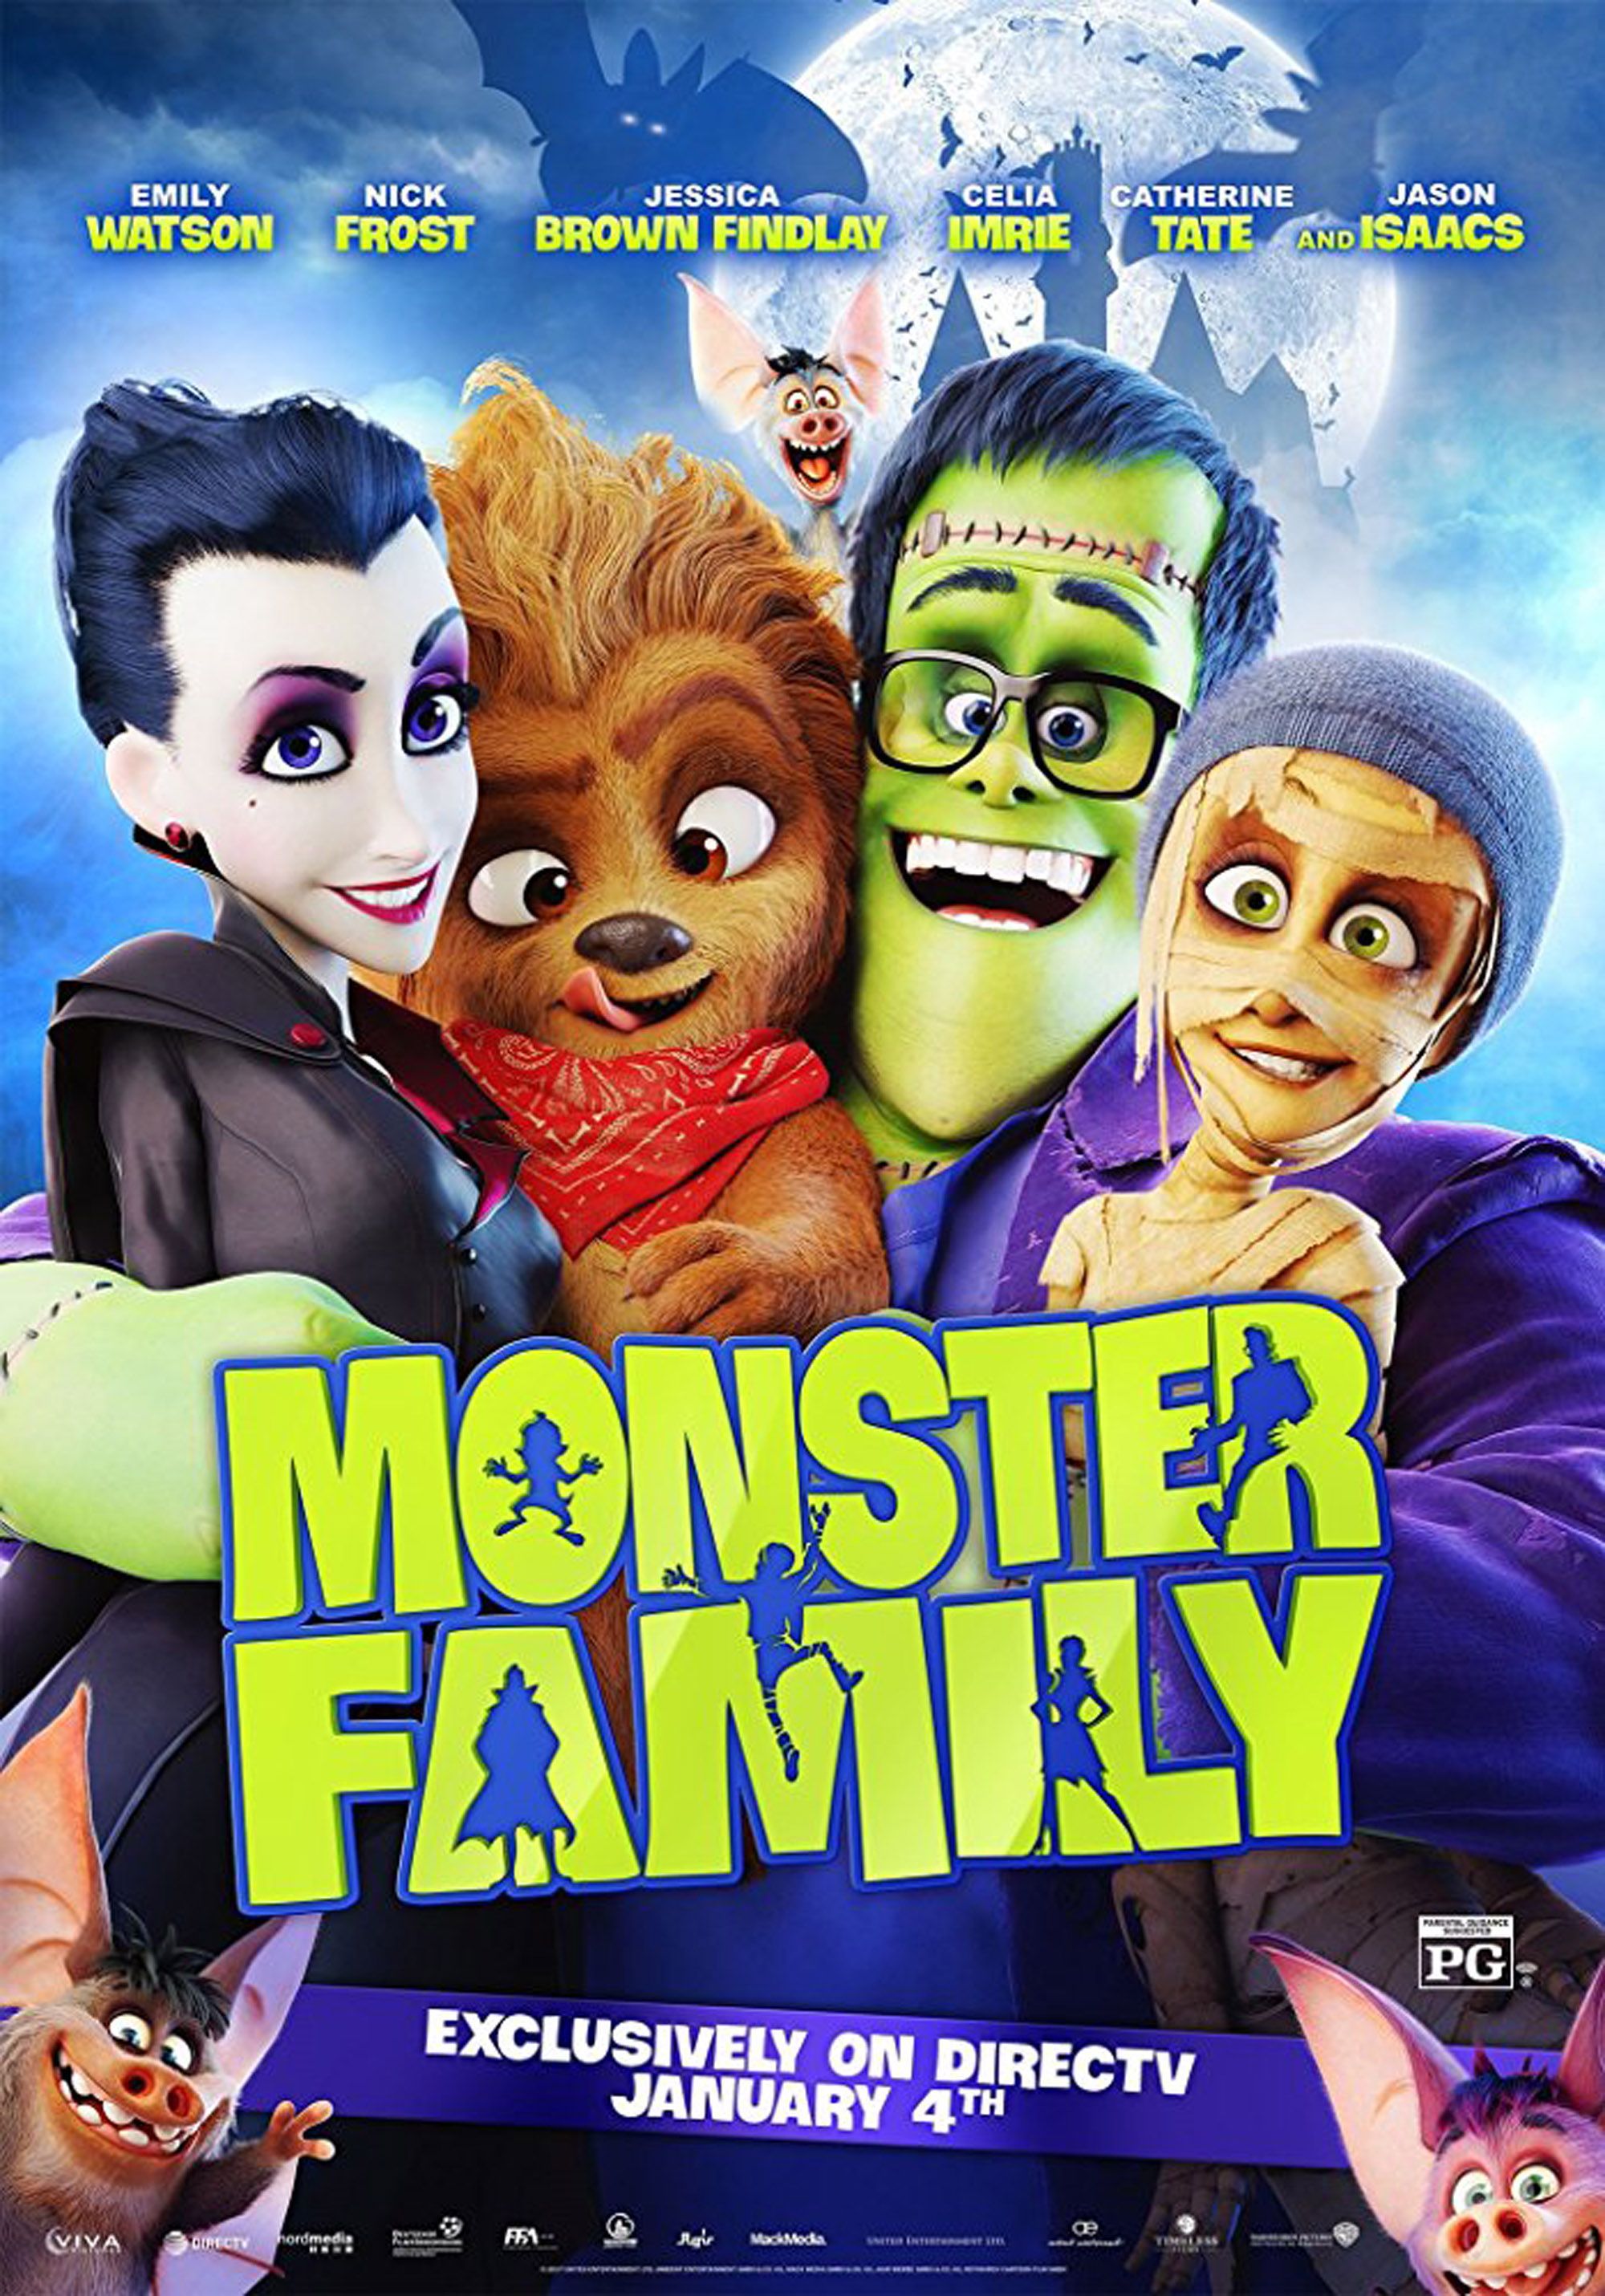 family halloween movies on netflix 2019